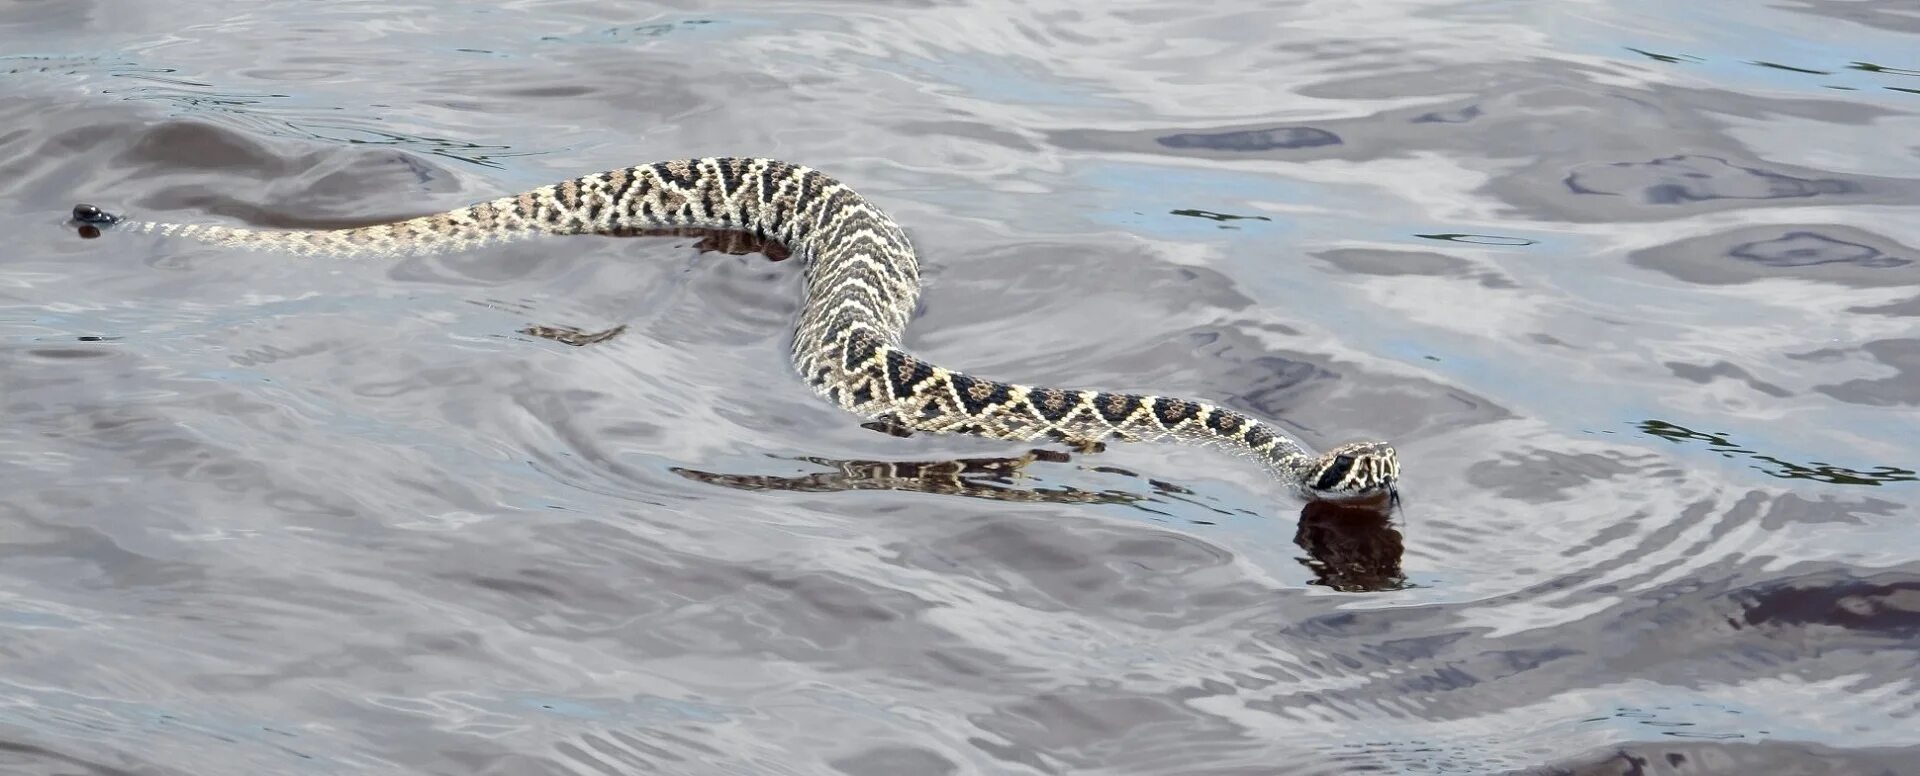 Большие змеи в воде